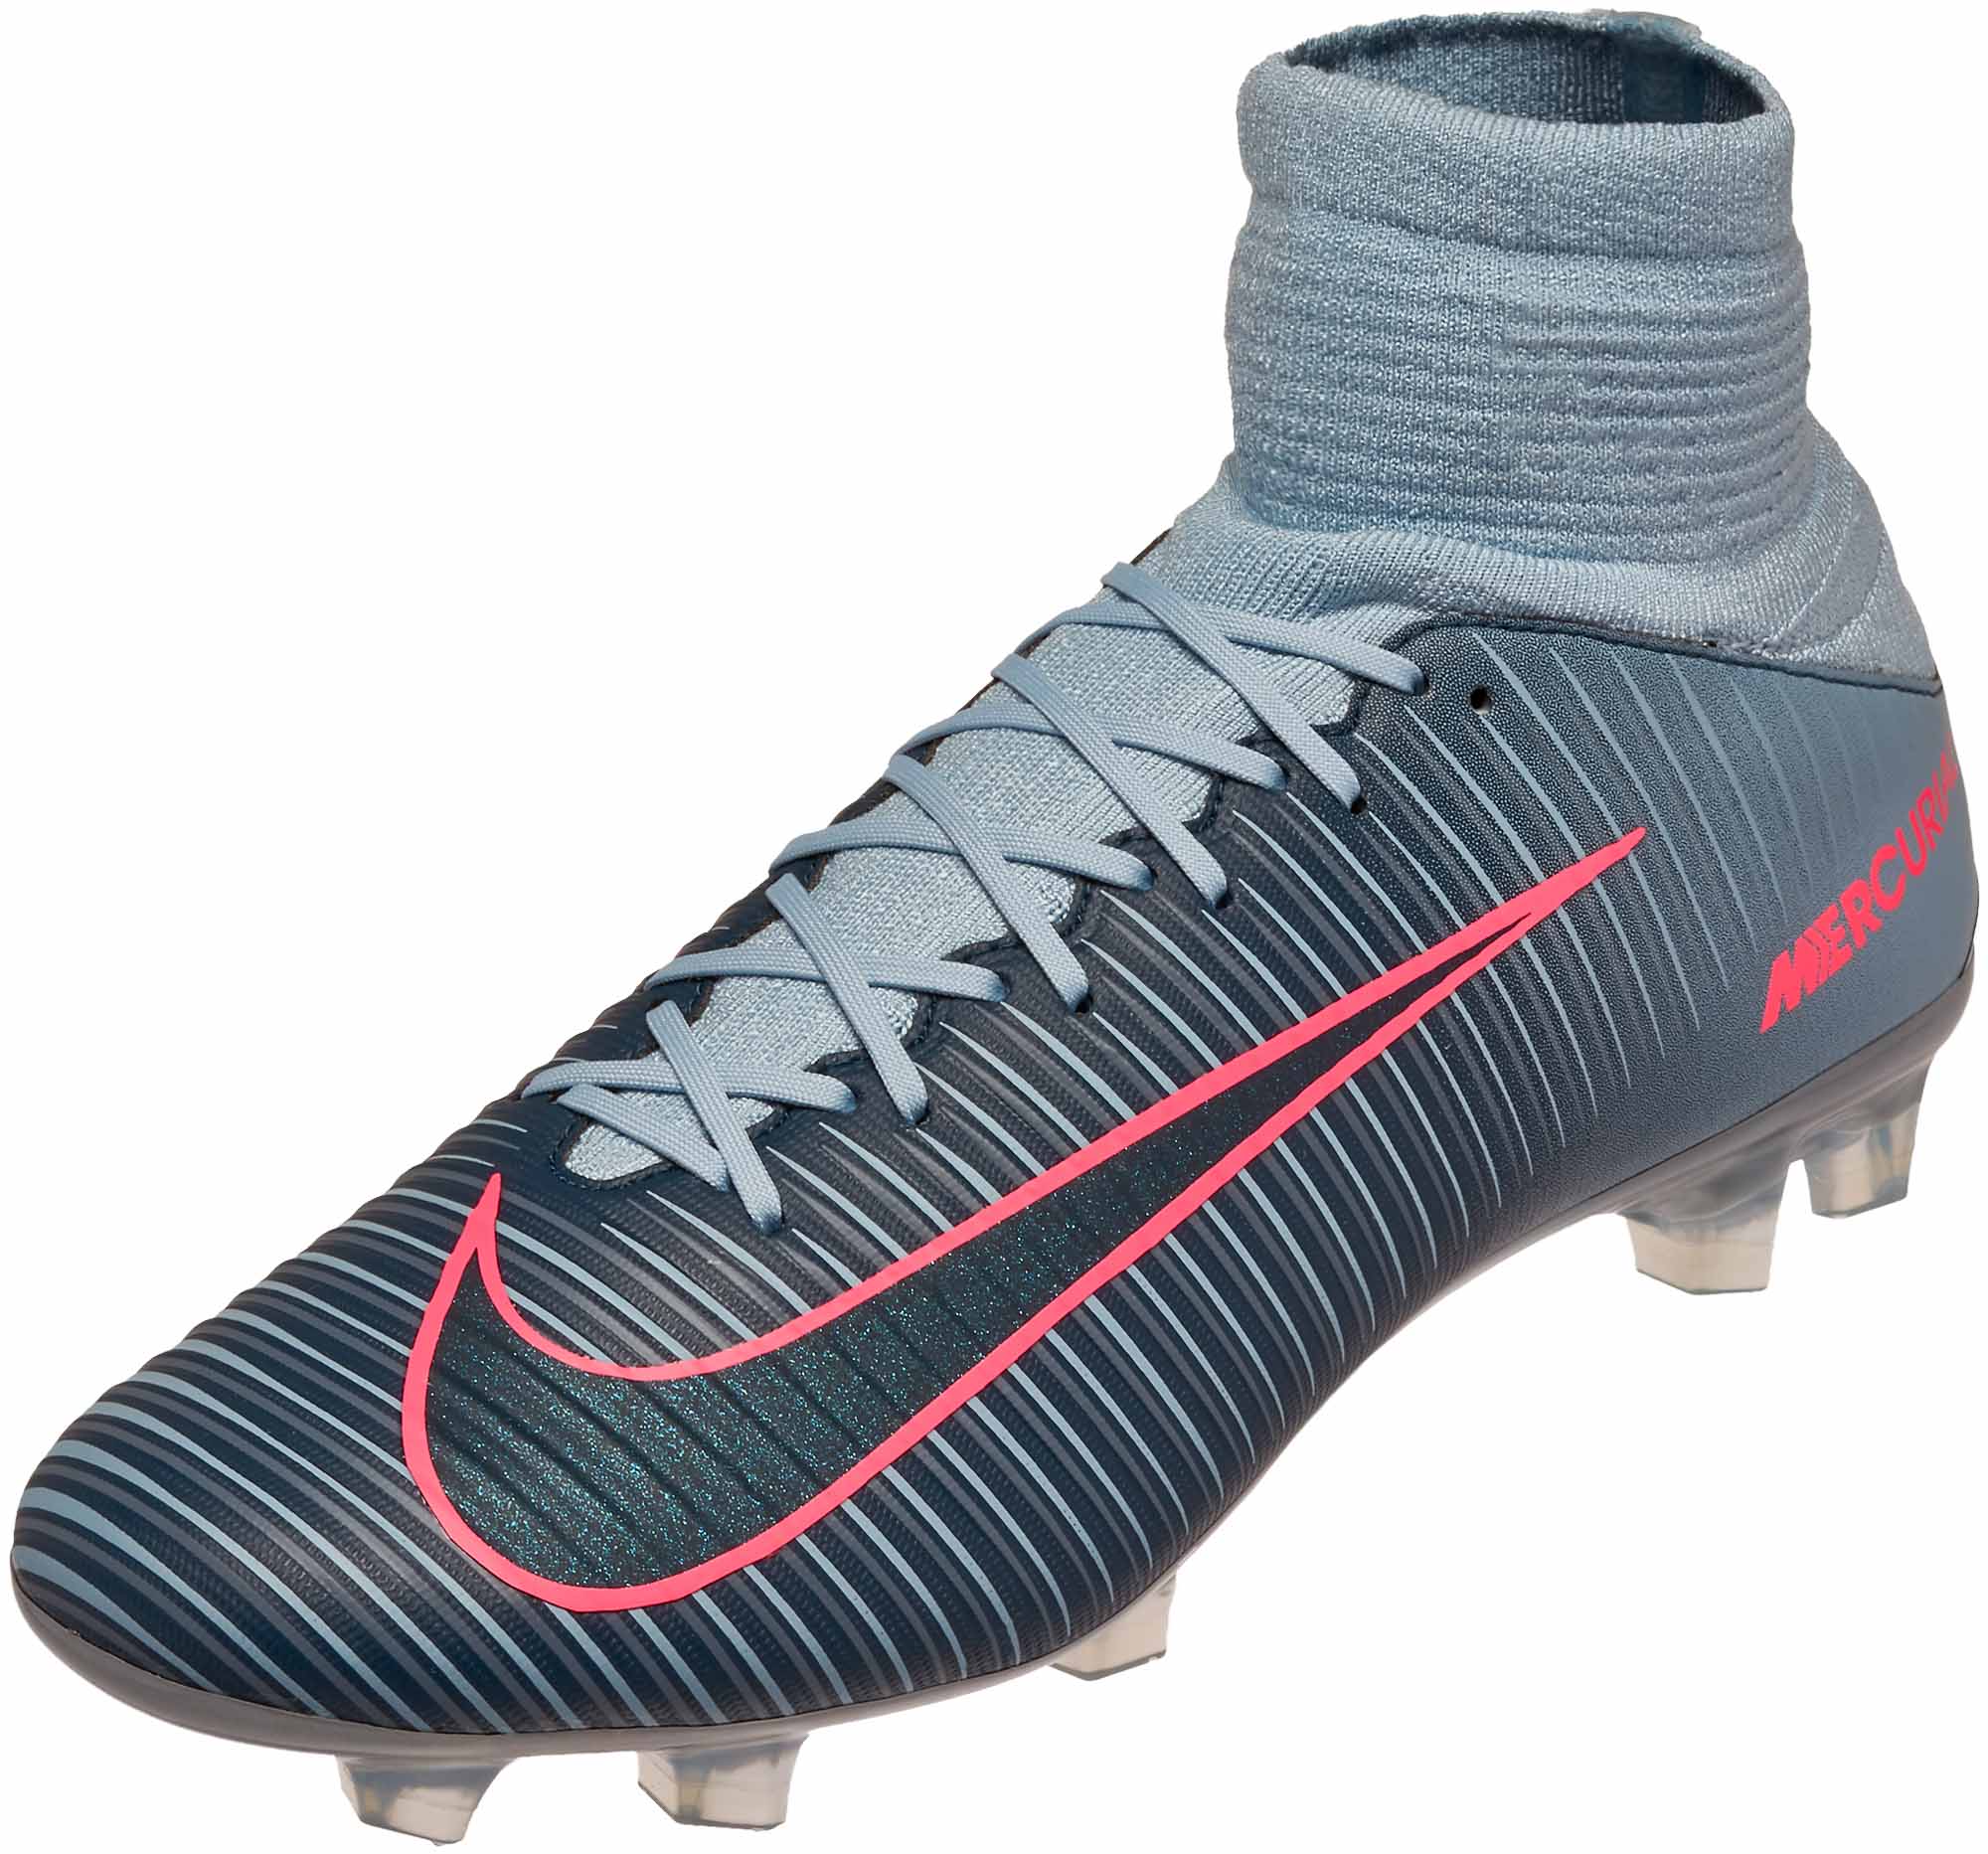 Nike Veloce III DF FG Soccer Cleats - SoccerPro.com